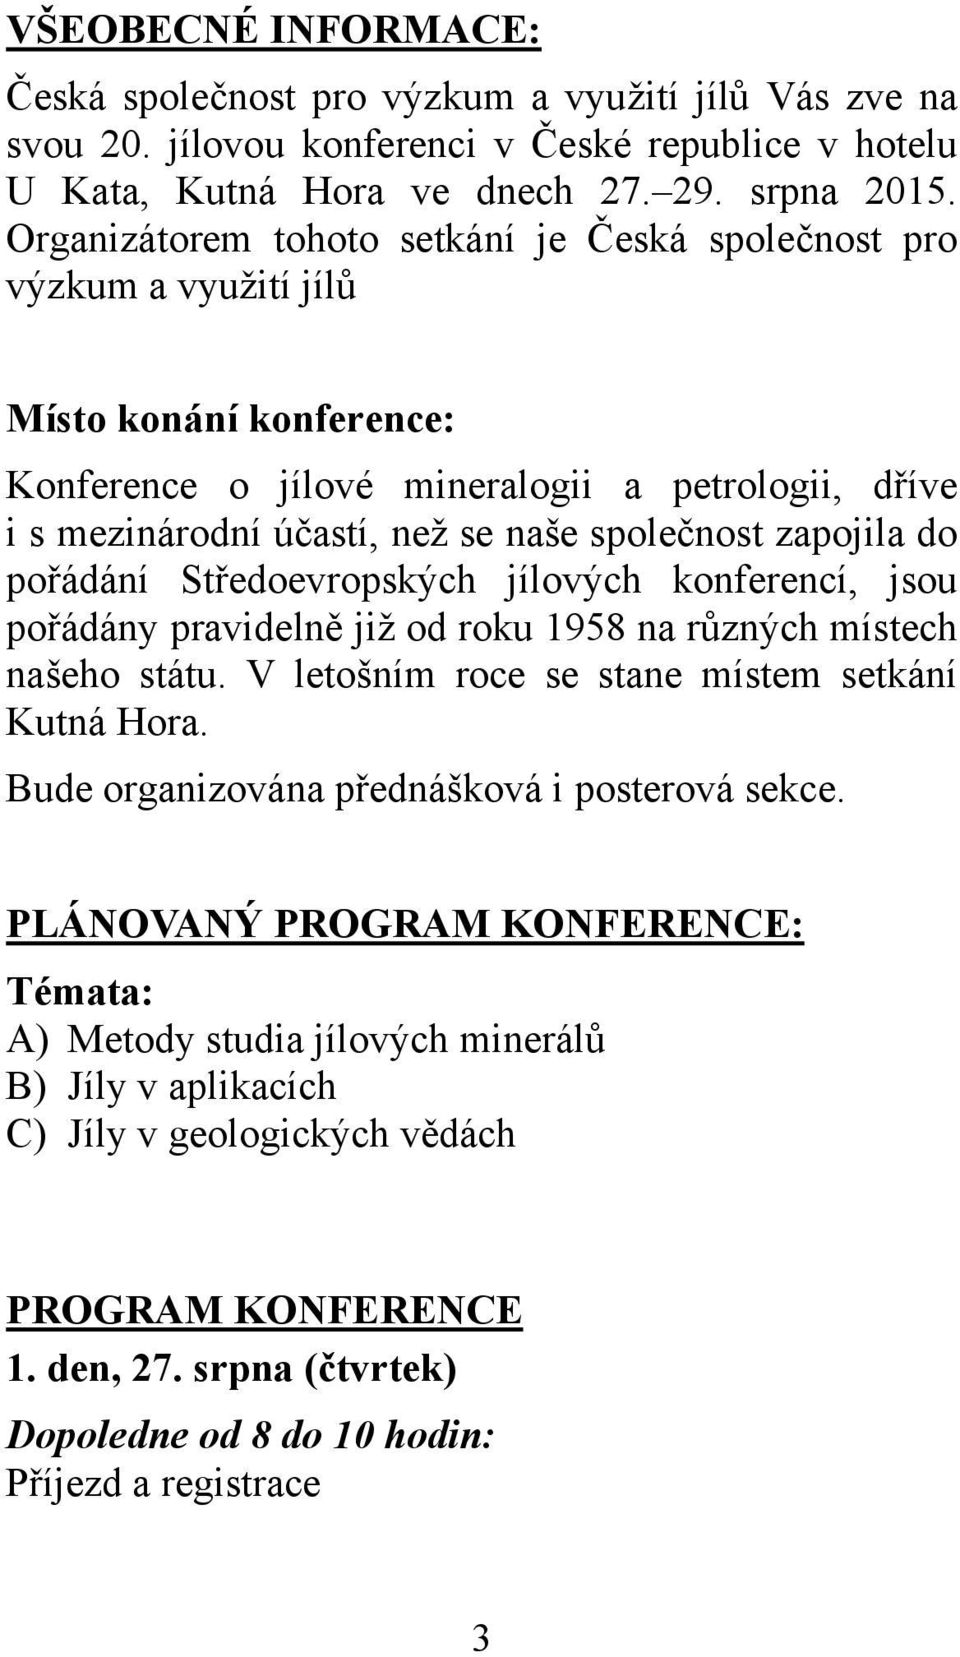 zapojila do pořádání Středoevropských jílových konferencí, jsou pořádány pravidelně již od roku 1958 na různých místech našeho státu. V letošním roce se stane místem setkání Kutná Hora.